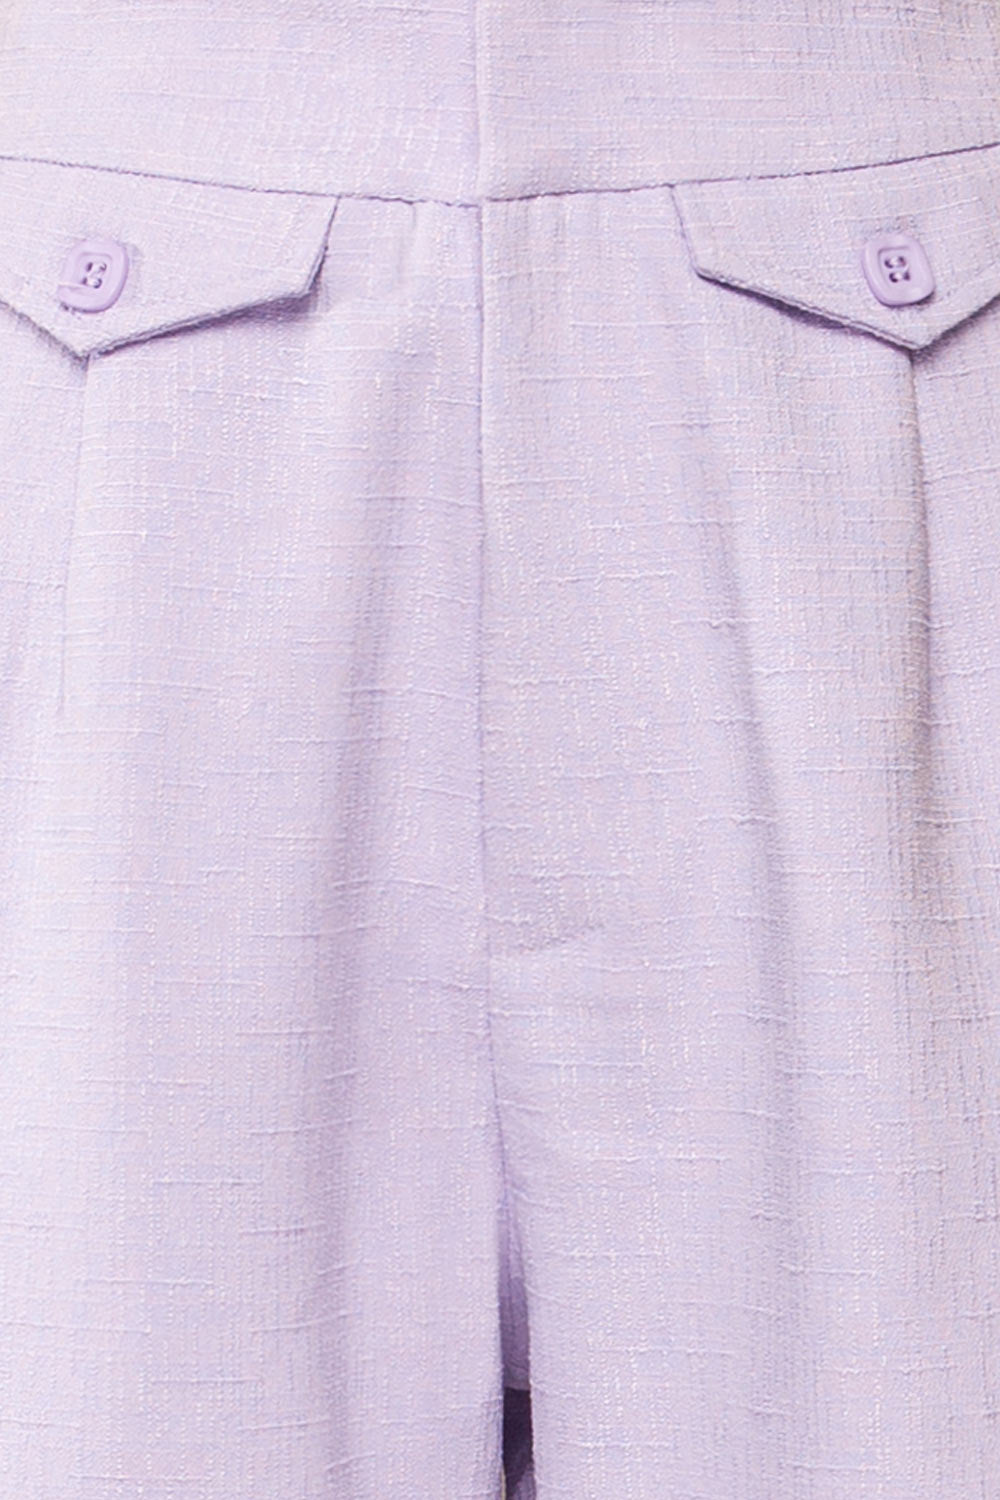 Sackville Lilac Textured Wide-Leg Pants | La petite garçonne fabric 